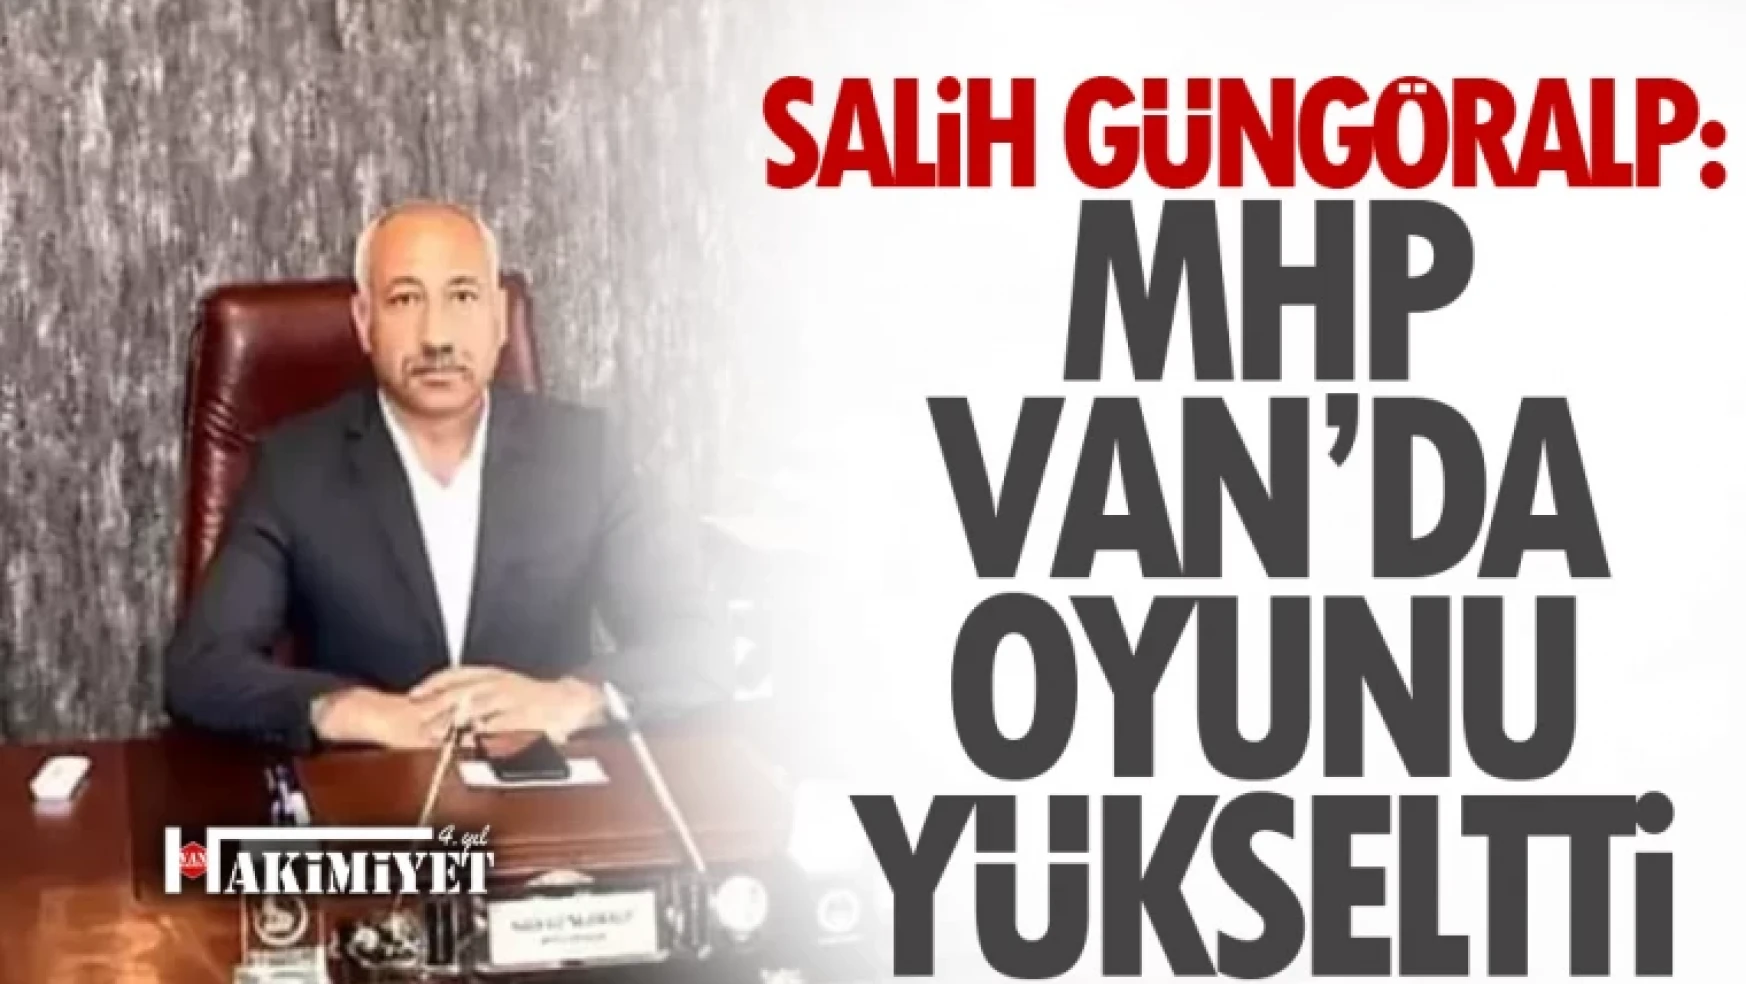 Salih Güngöralp: MHP Van'da oyunu yükseltti